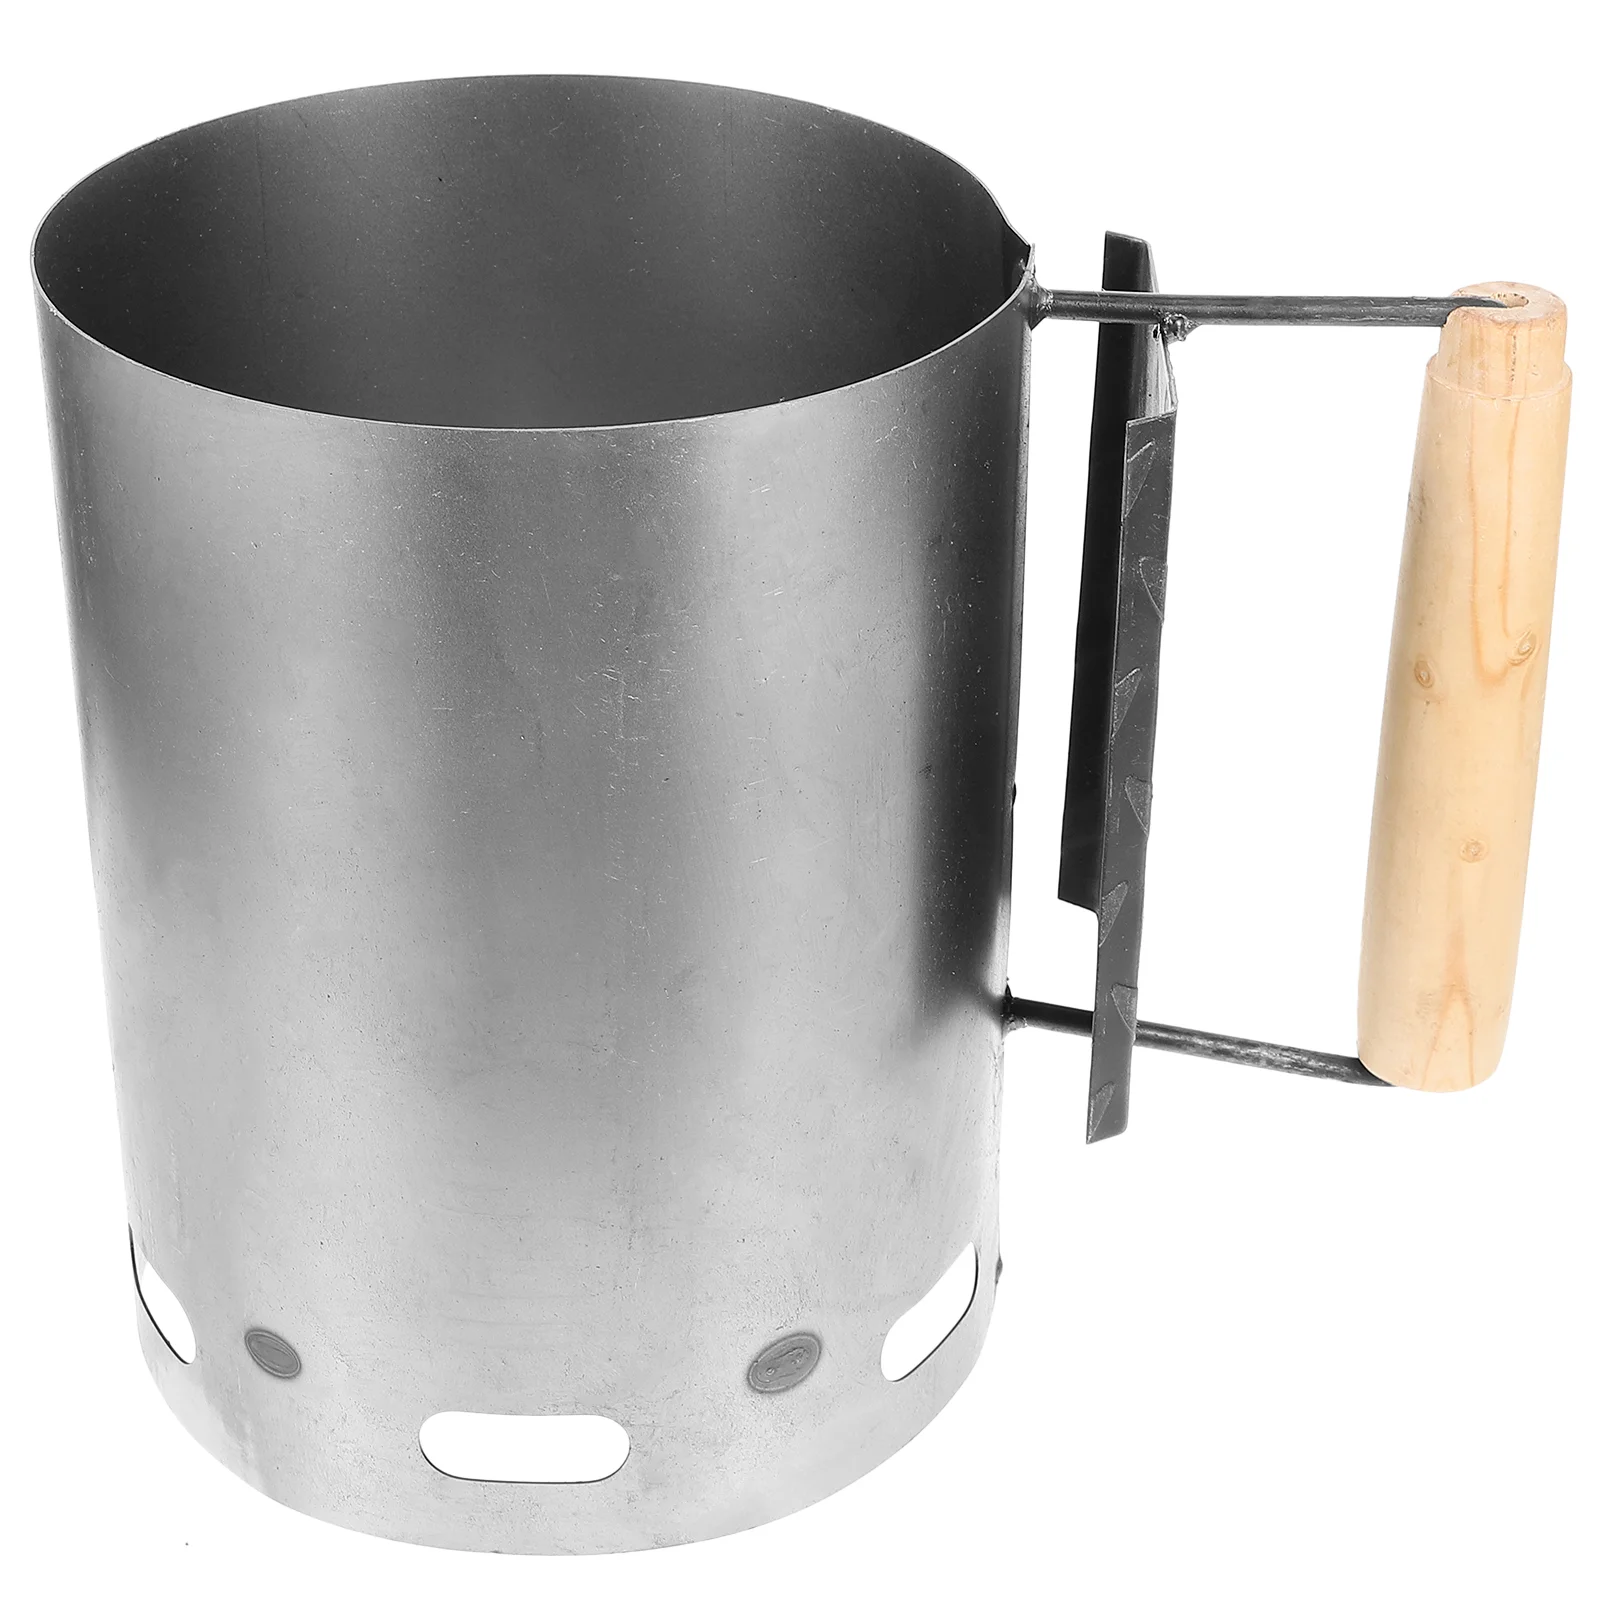 

Wooden Handle Chimney Lighter Basket Outdoor Charcoal Starter BBQ Ignition Barrel